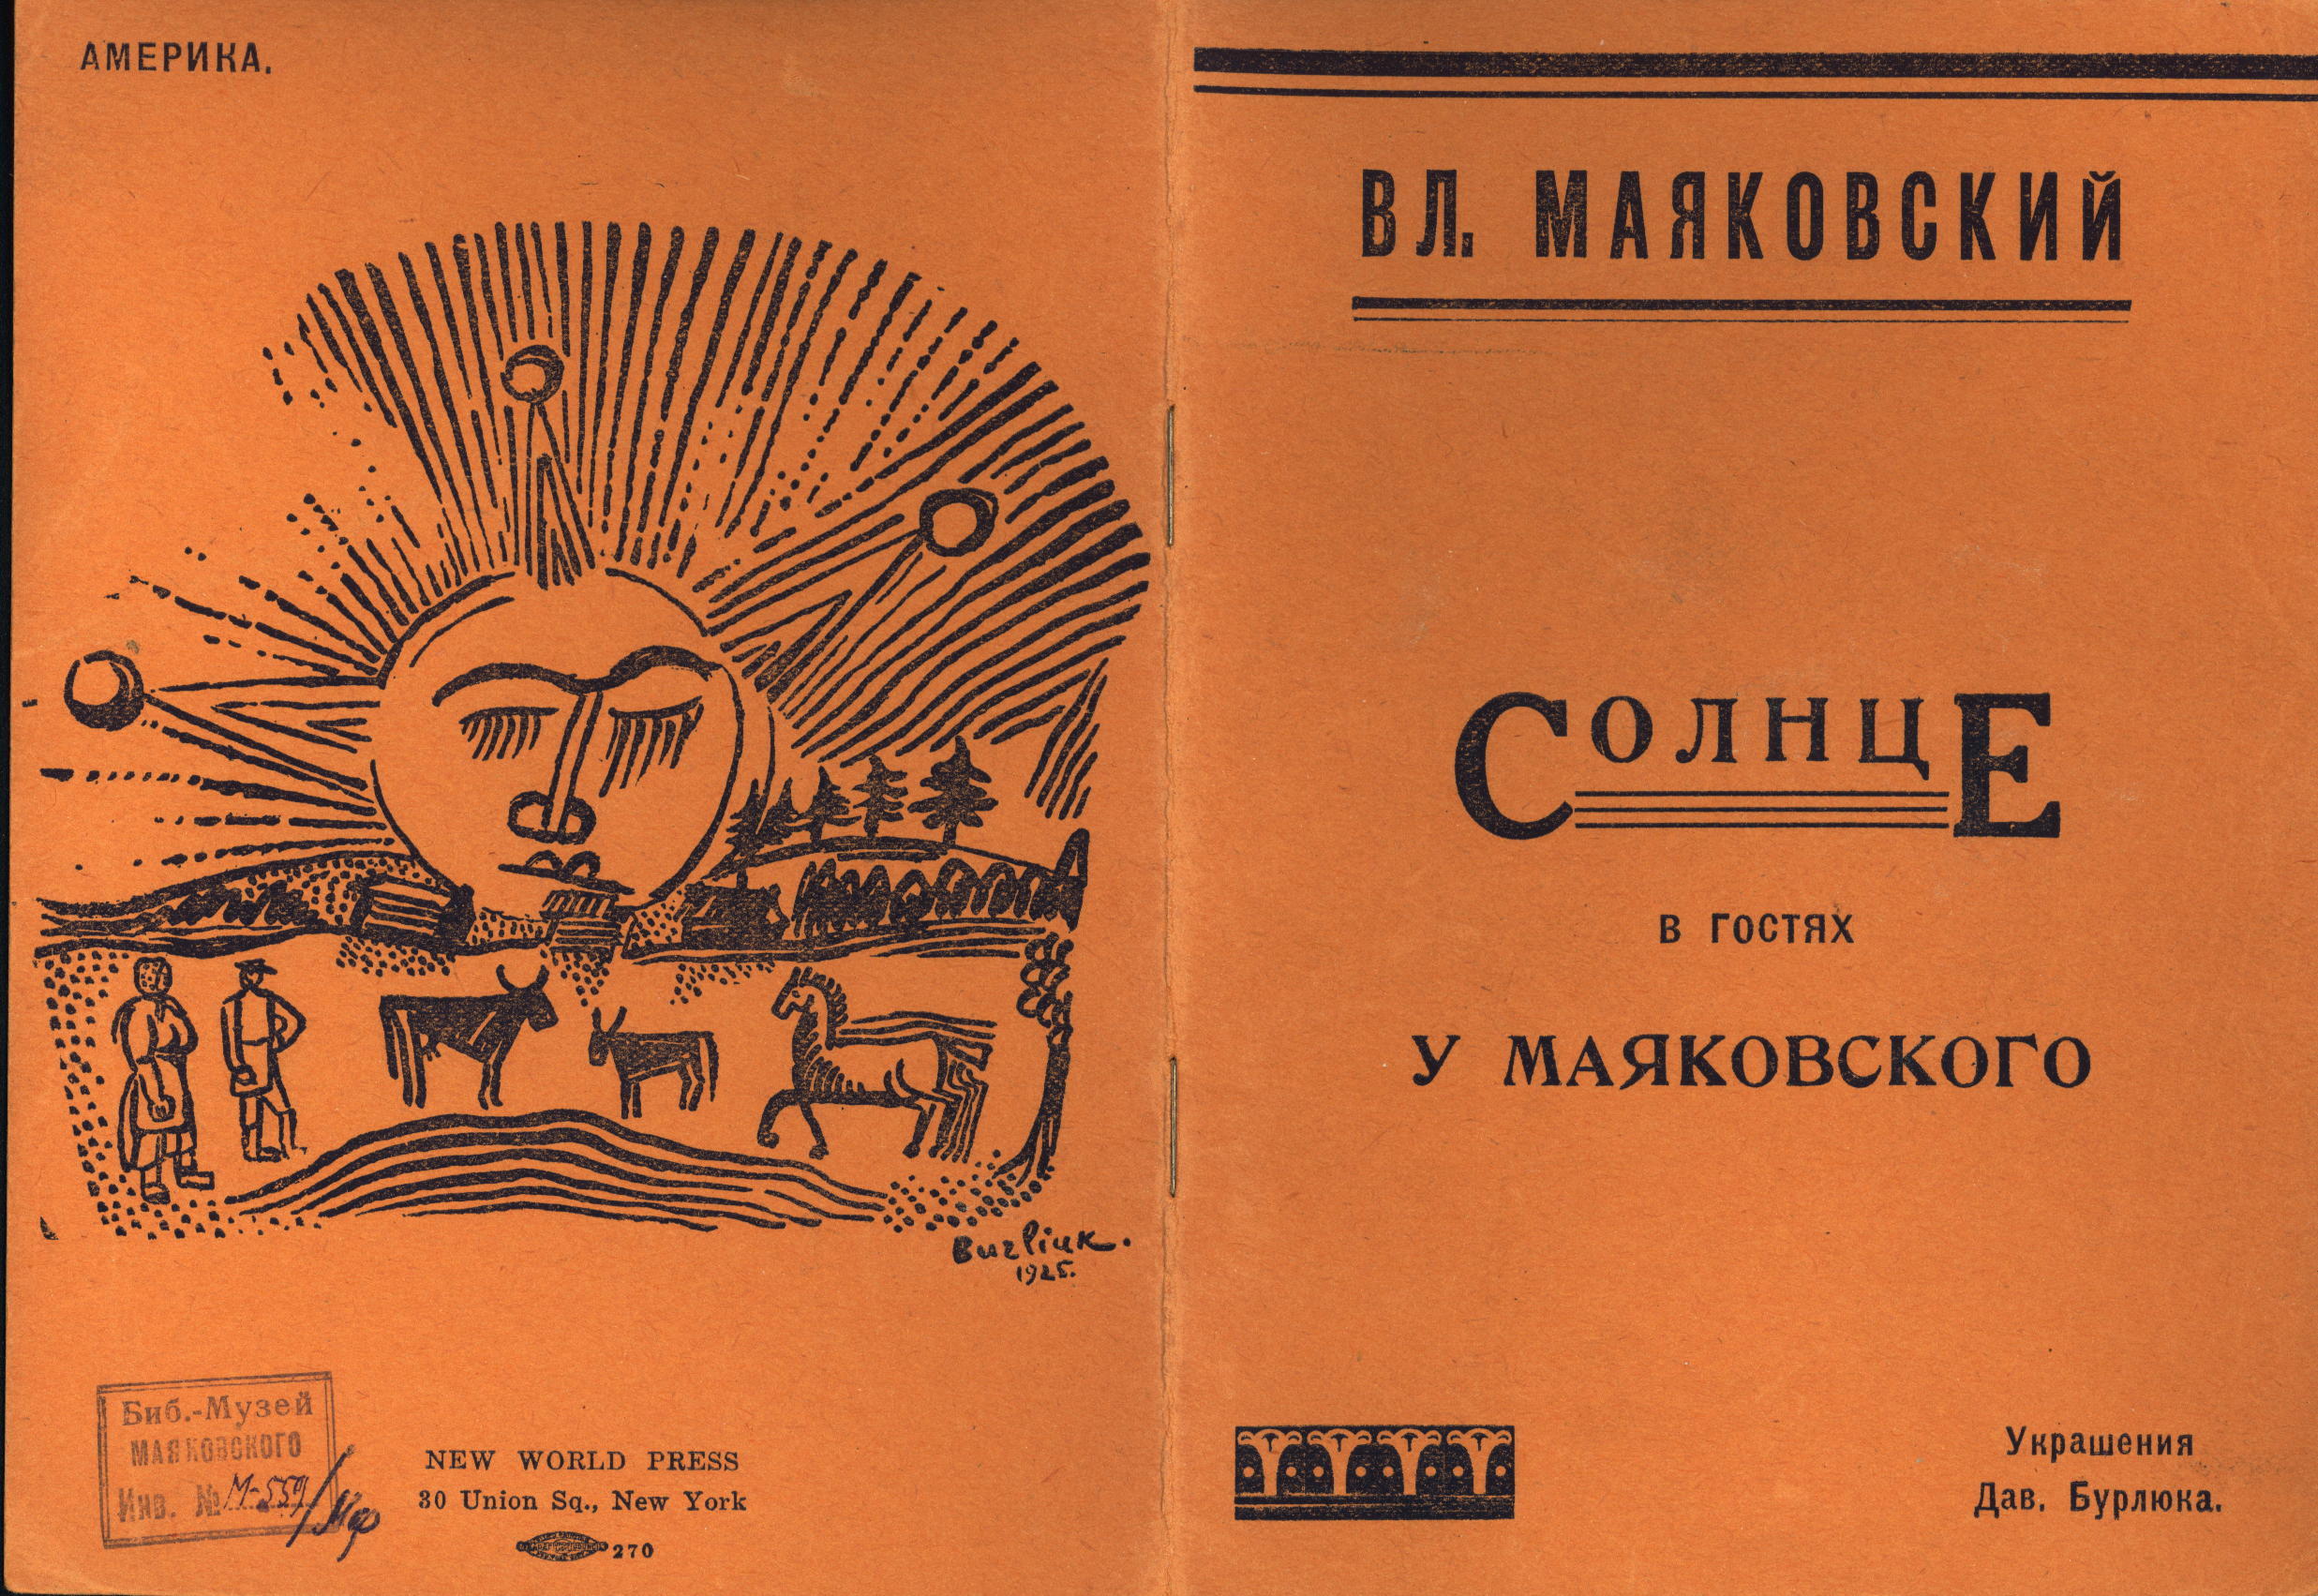 Необыкновенное приключение владимира маяковского. Маяковский необычайное приключение бывшее с в Маяковским.